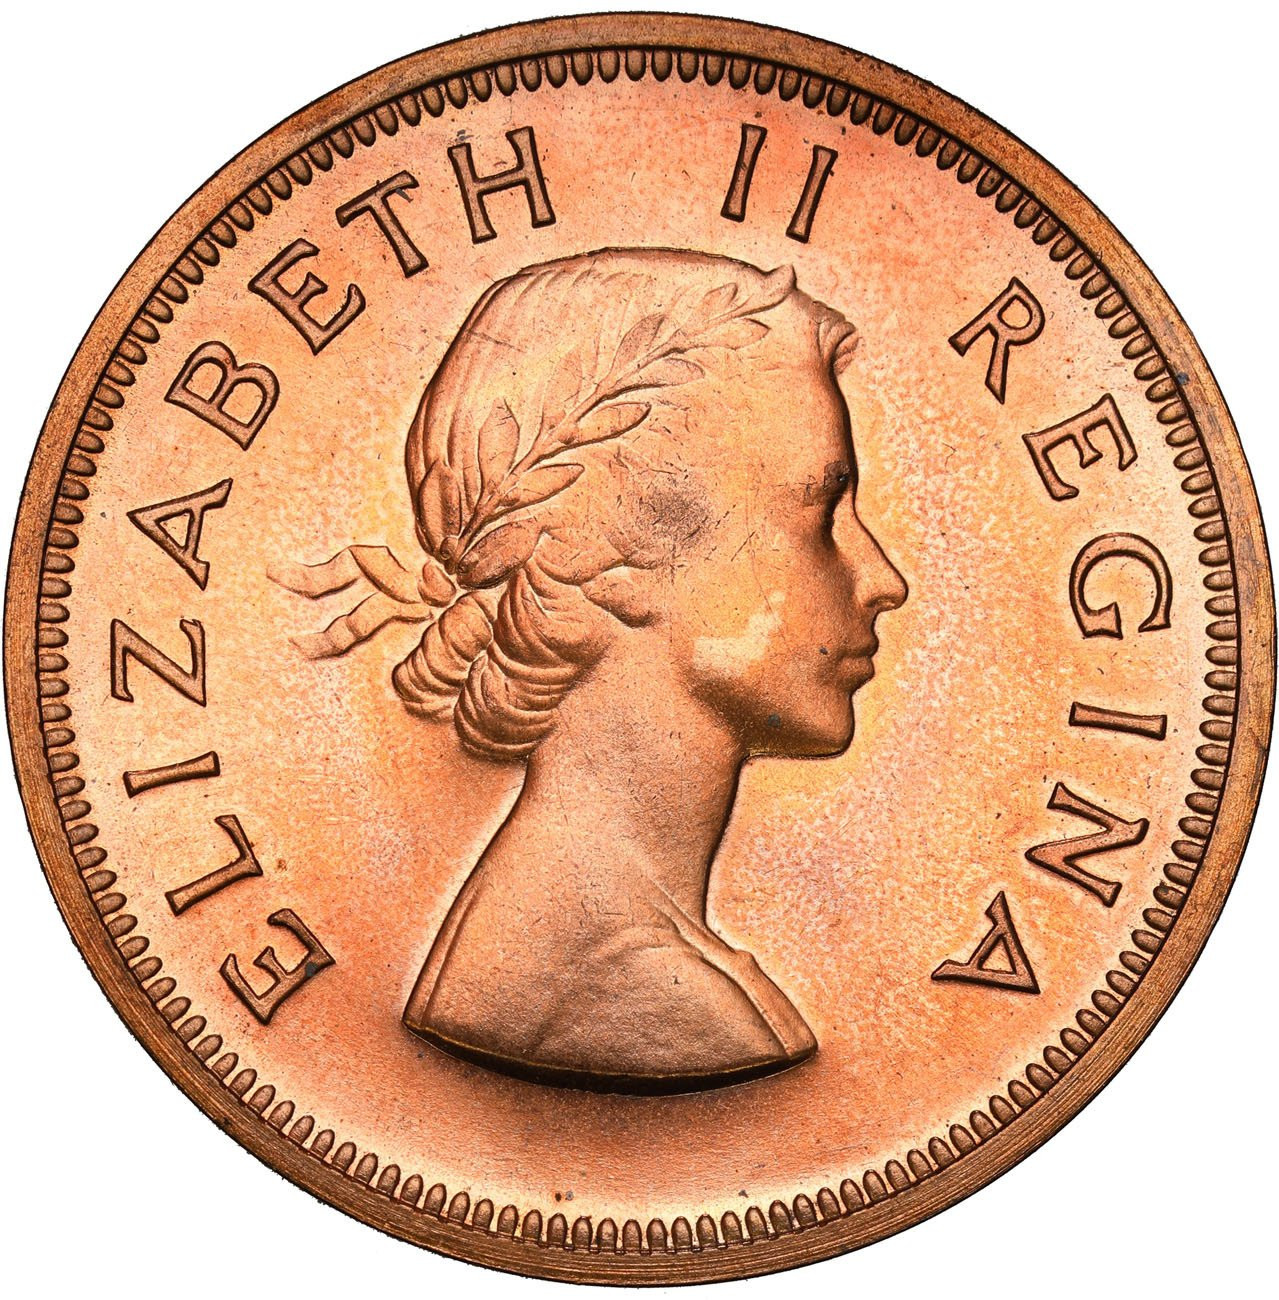 Wielka Brytania dla Republiki Południowej Afryki. Elżbieta II. 1 pens 1953 – STEMPEL LUSTRZANY